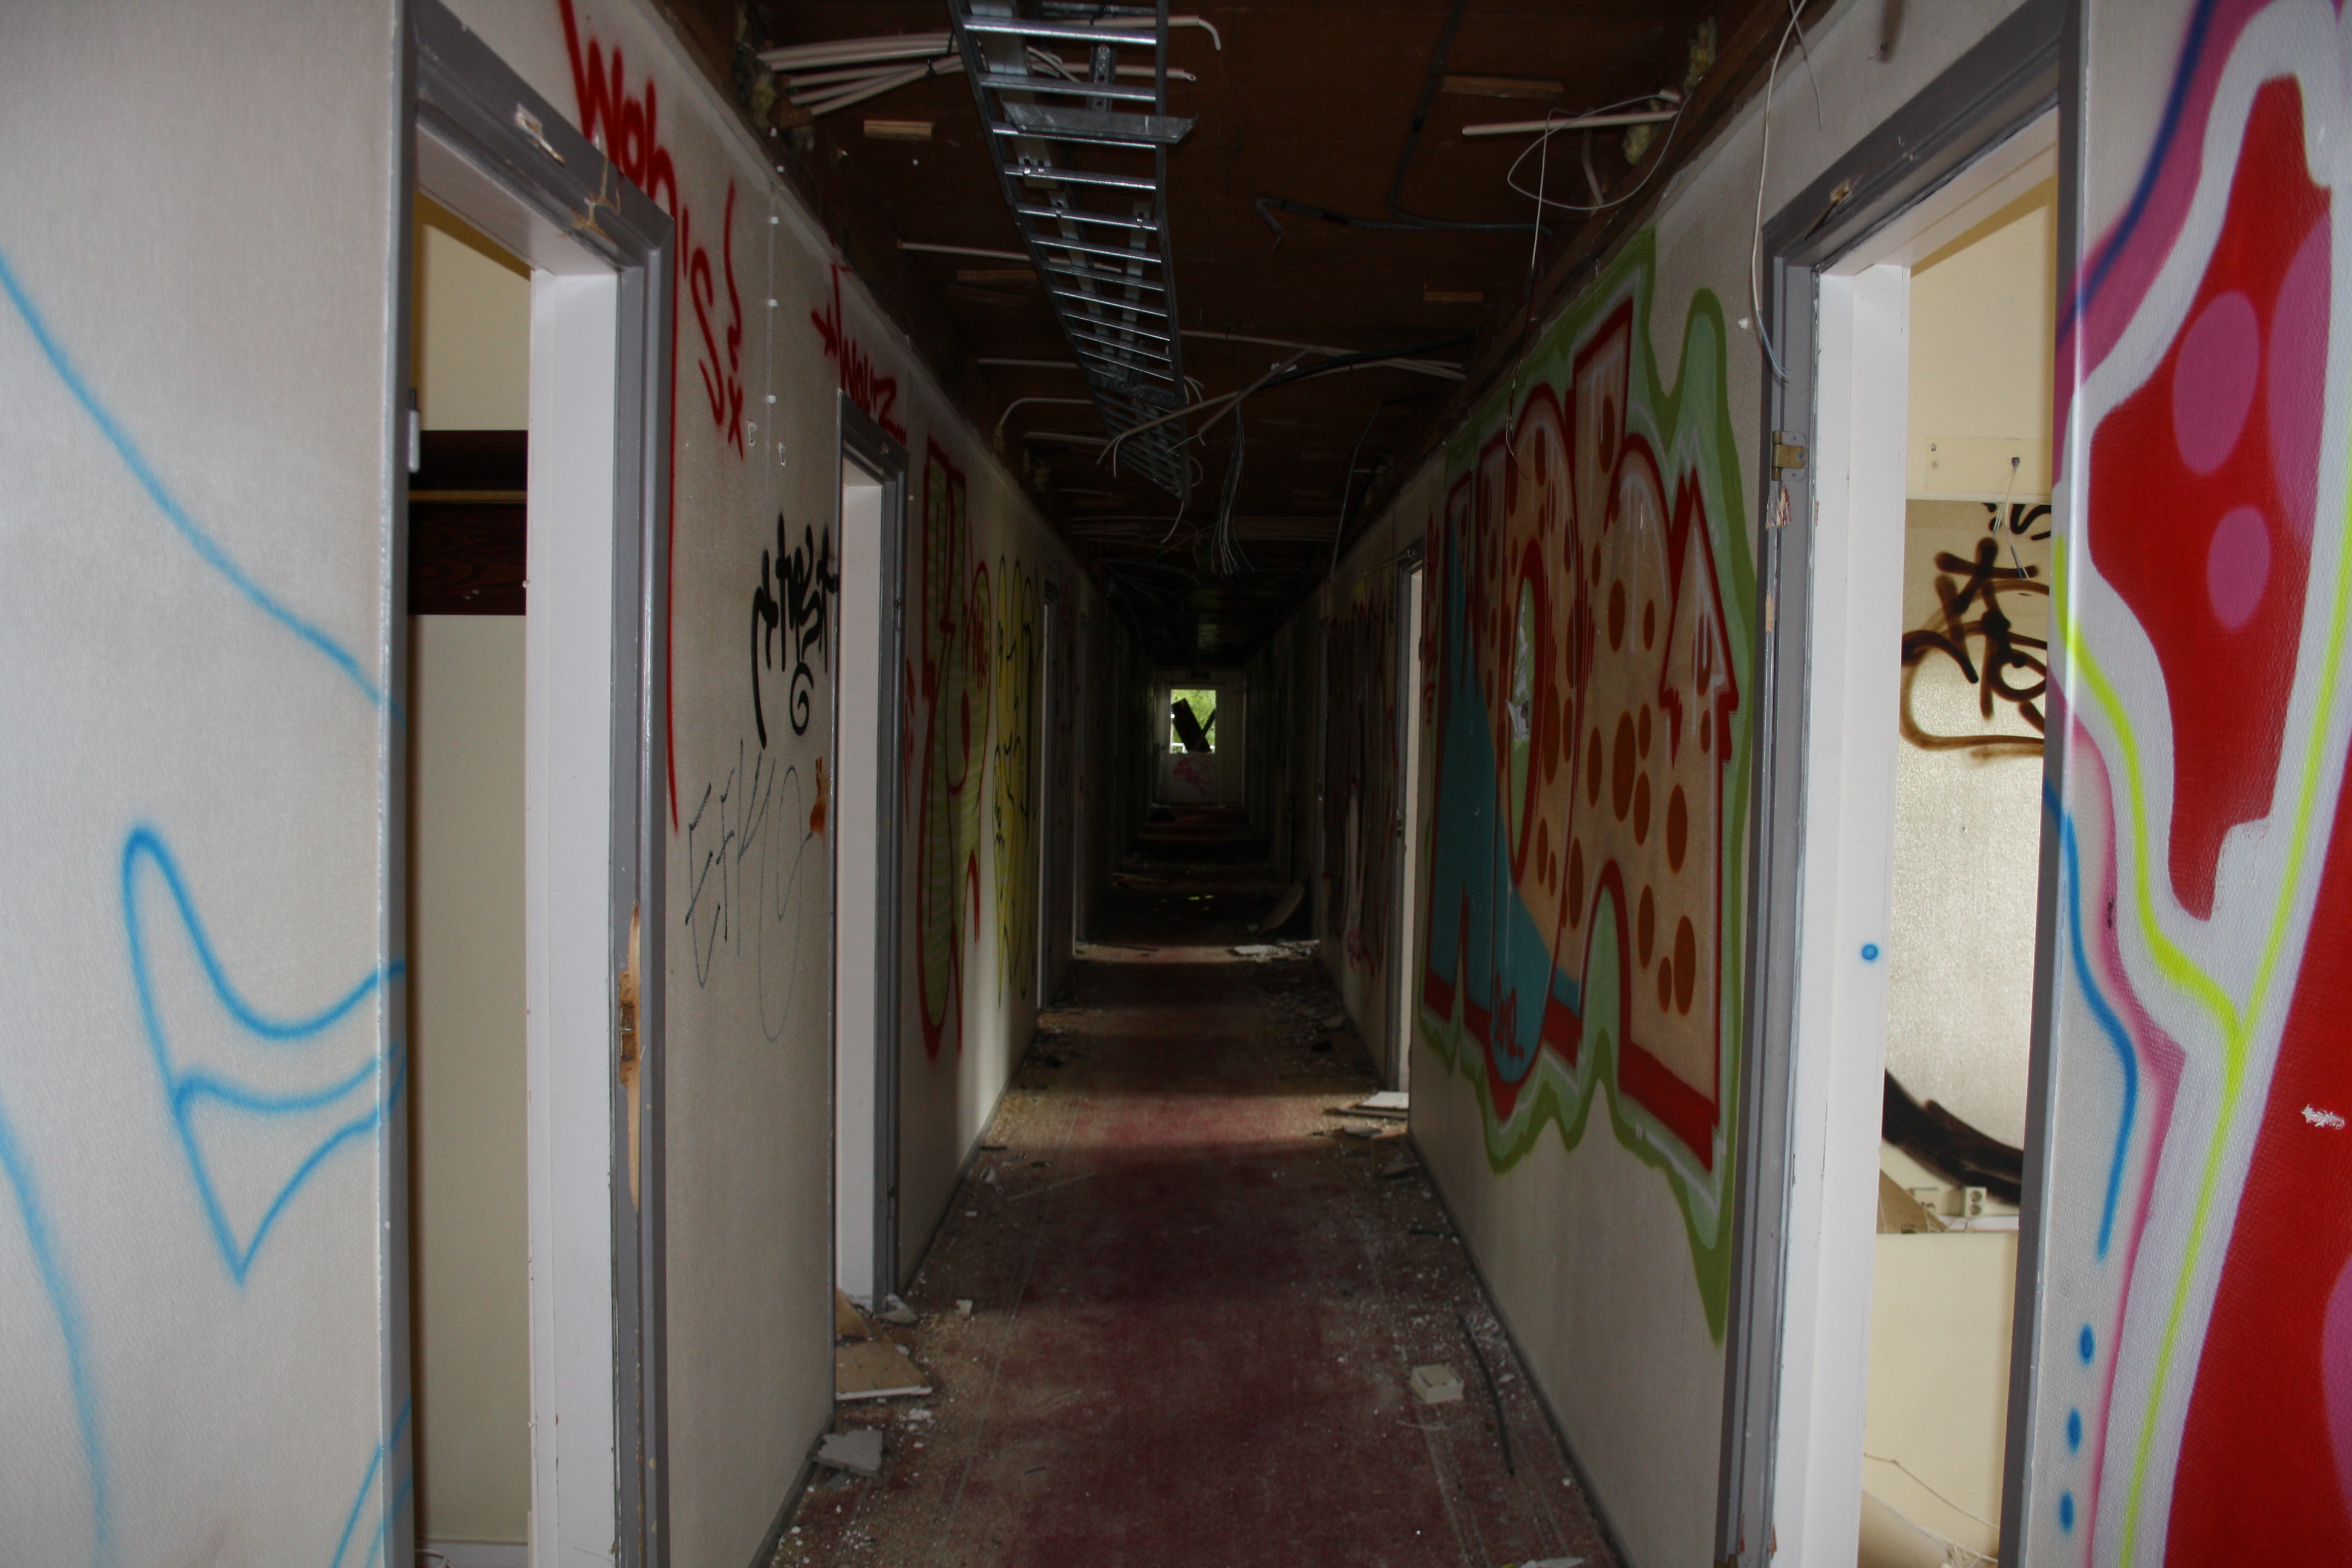 Väggarna i korridoren täcks av grafitti. 